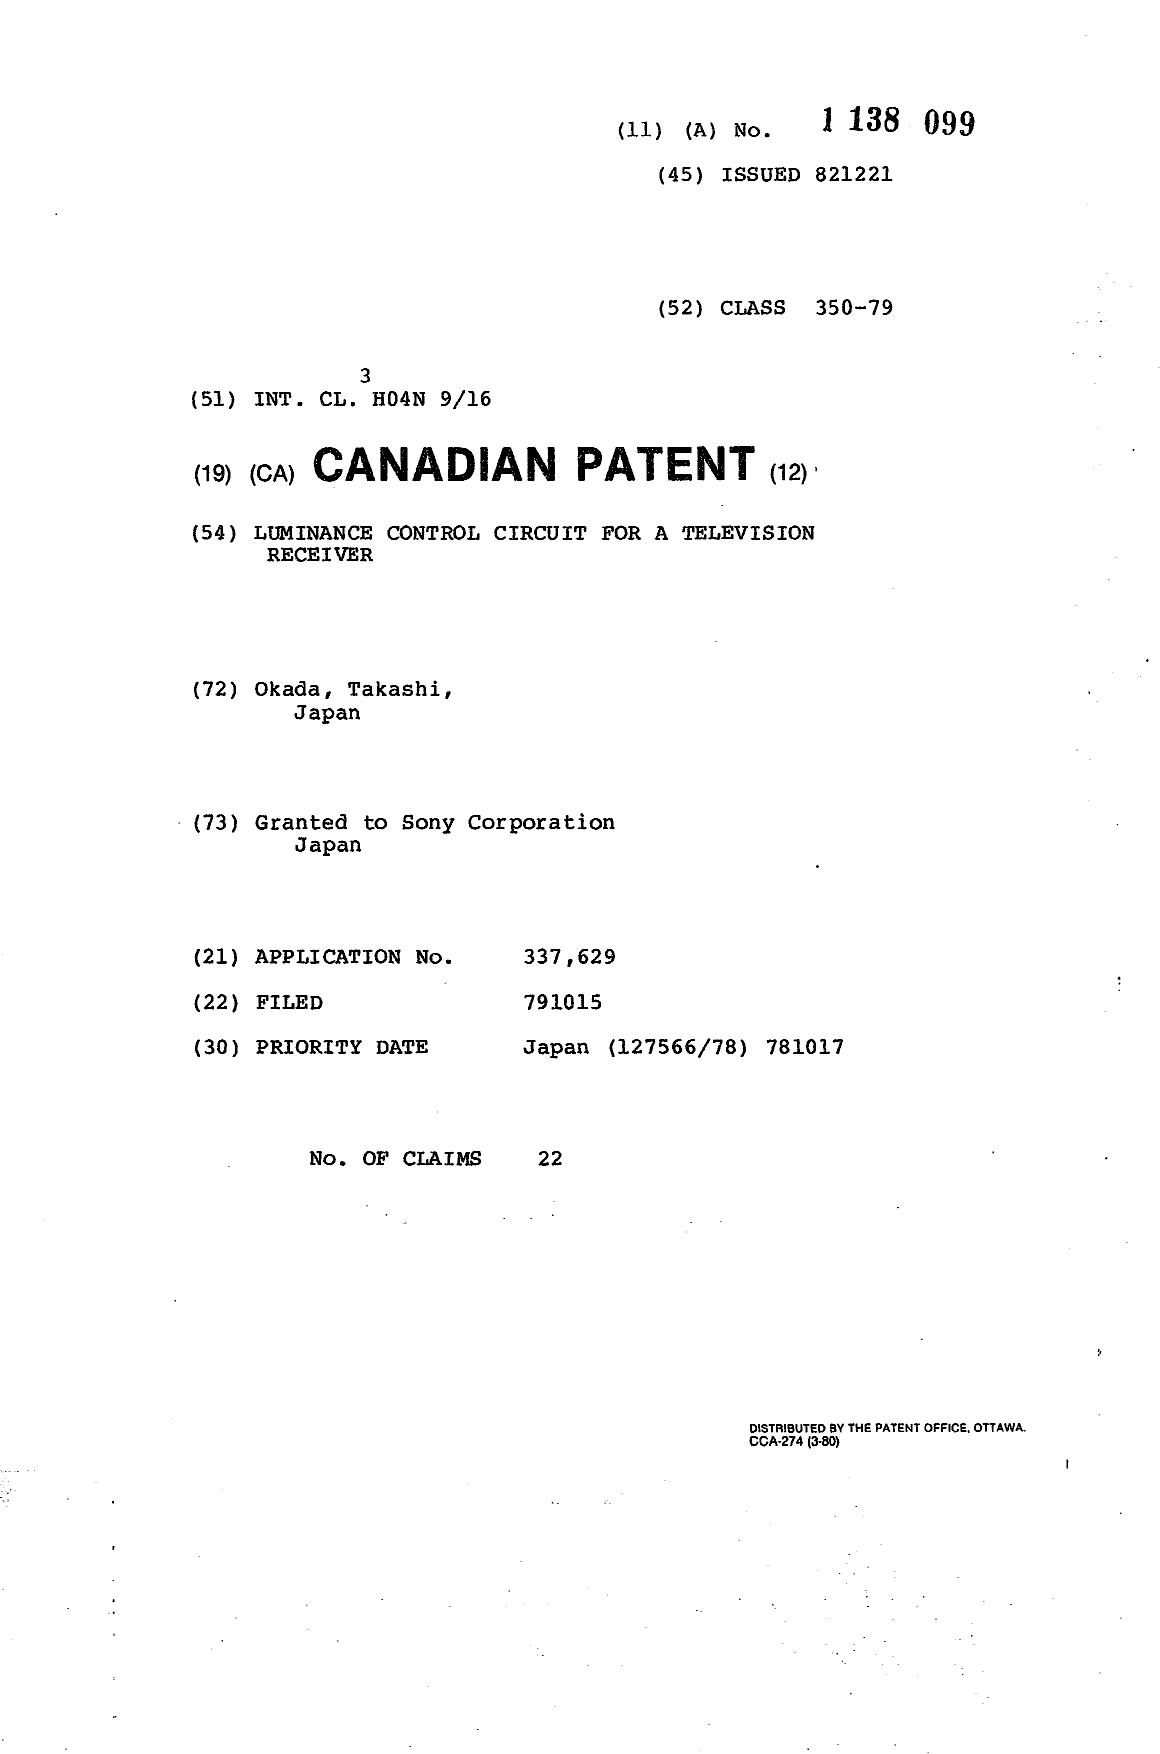 Document de brevet canadien 1138099. Page couverture 19940228. Image 1 de 1